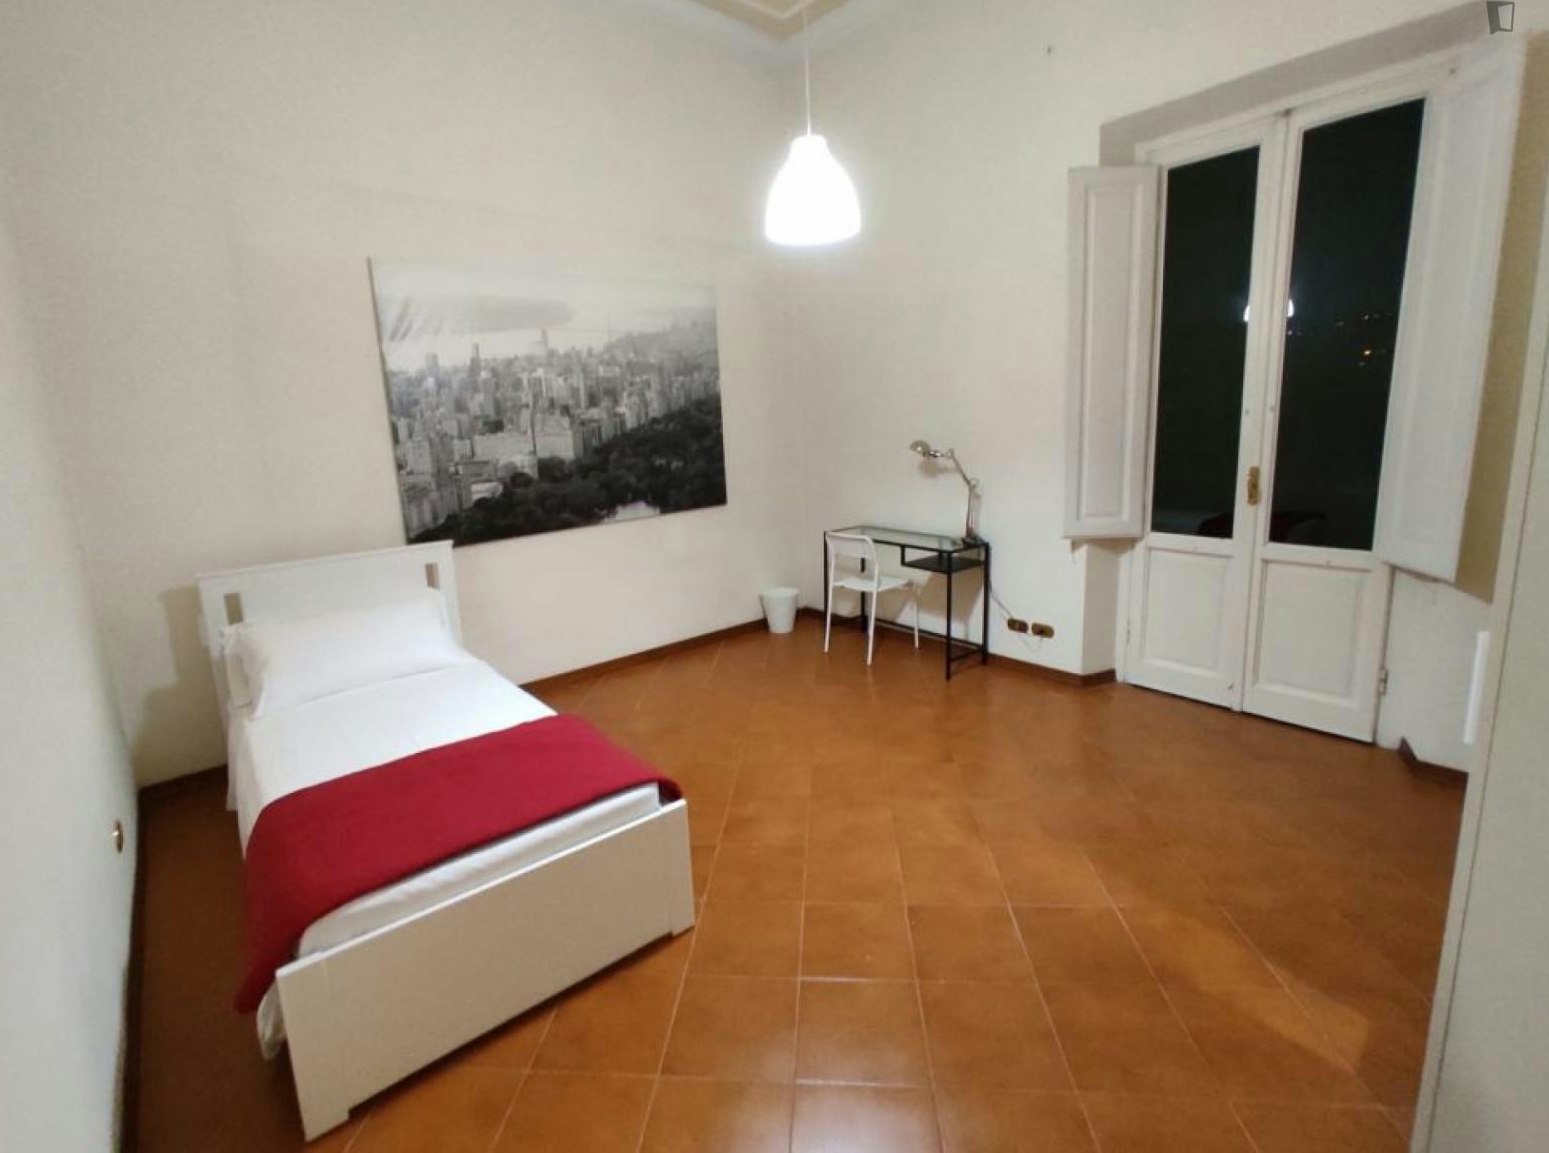 Big single bedroom near Campo di Marte